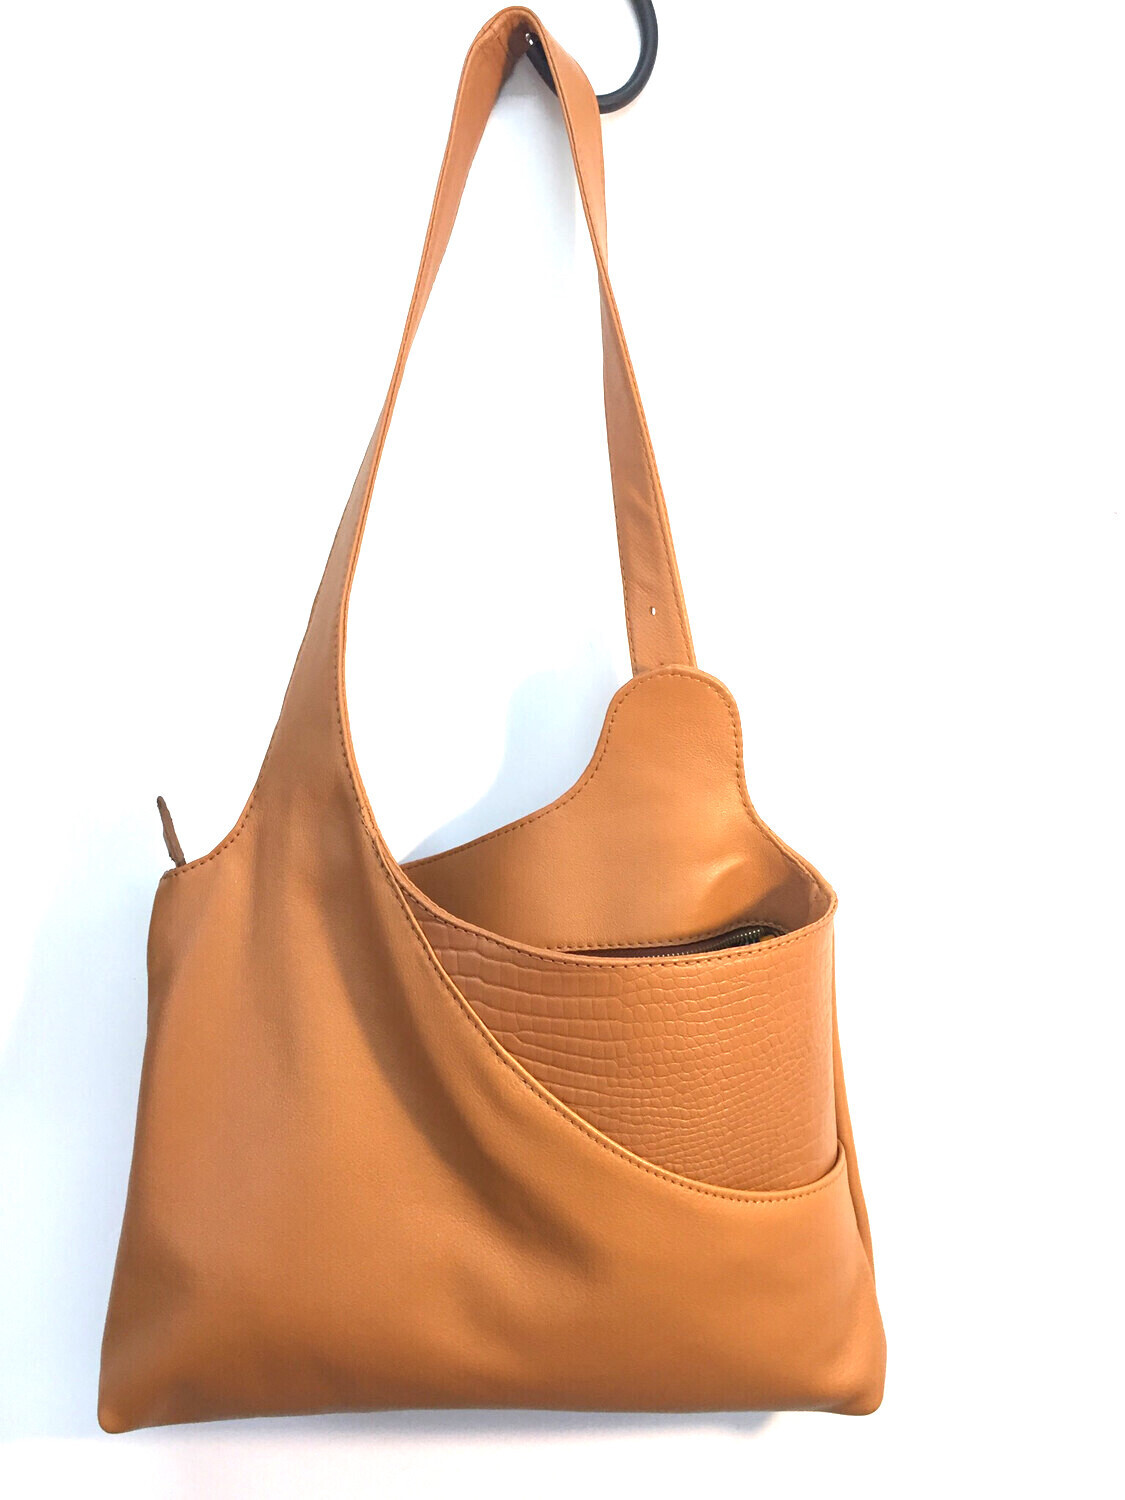 Hobby sac cuir Français porté épaule réglable lanière par boucle fait à Toulouse